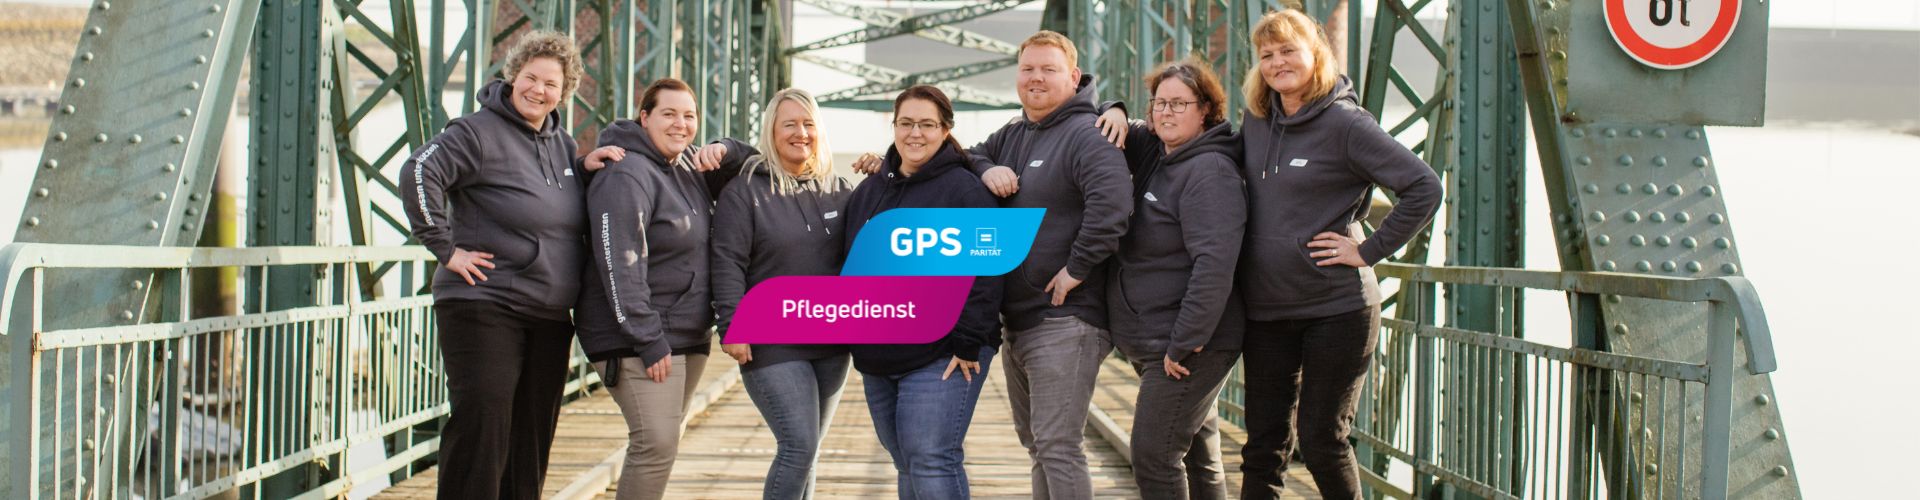 GPS Pflegedienst Teamfoto auf Brücke in Wilhelmshaven.